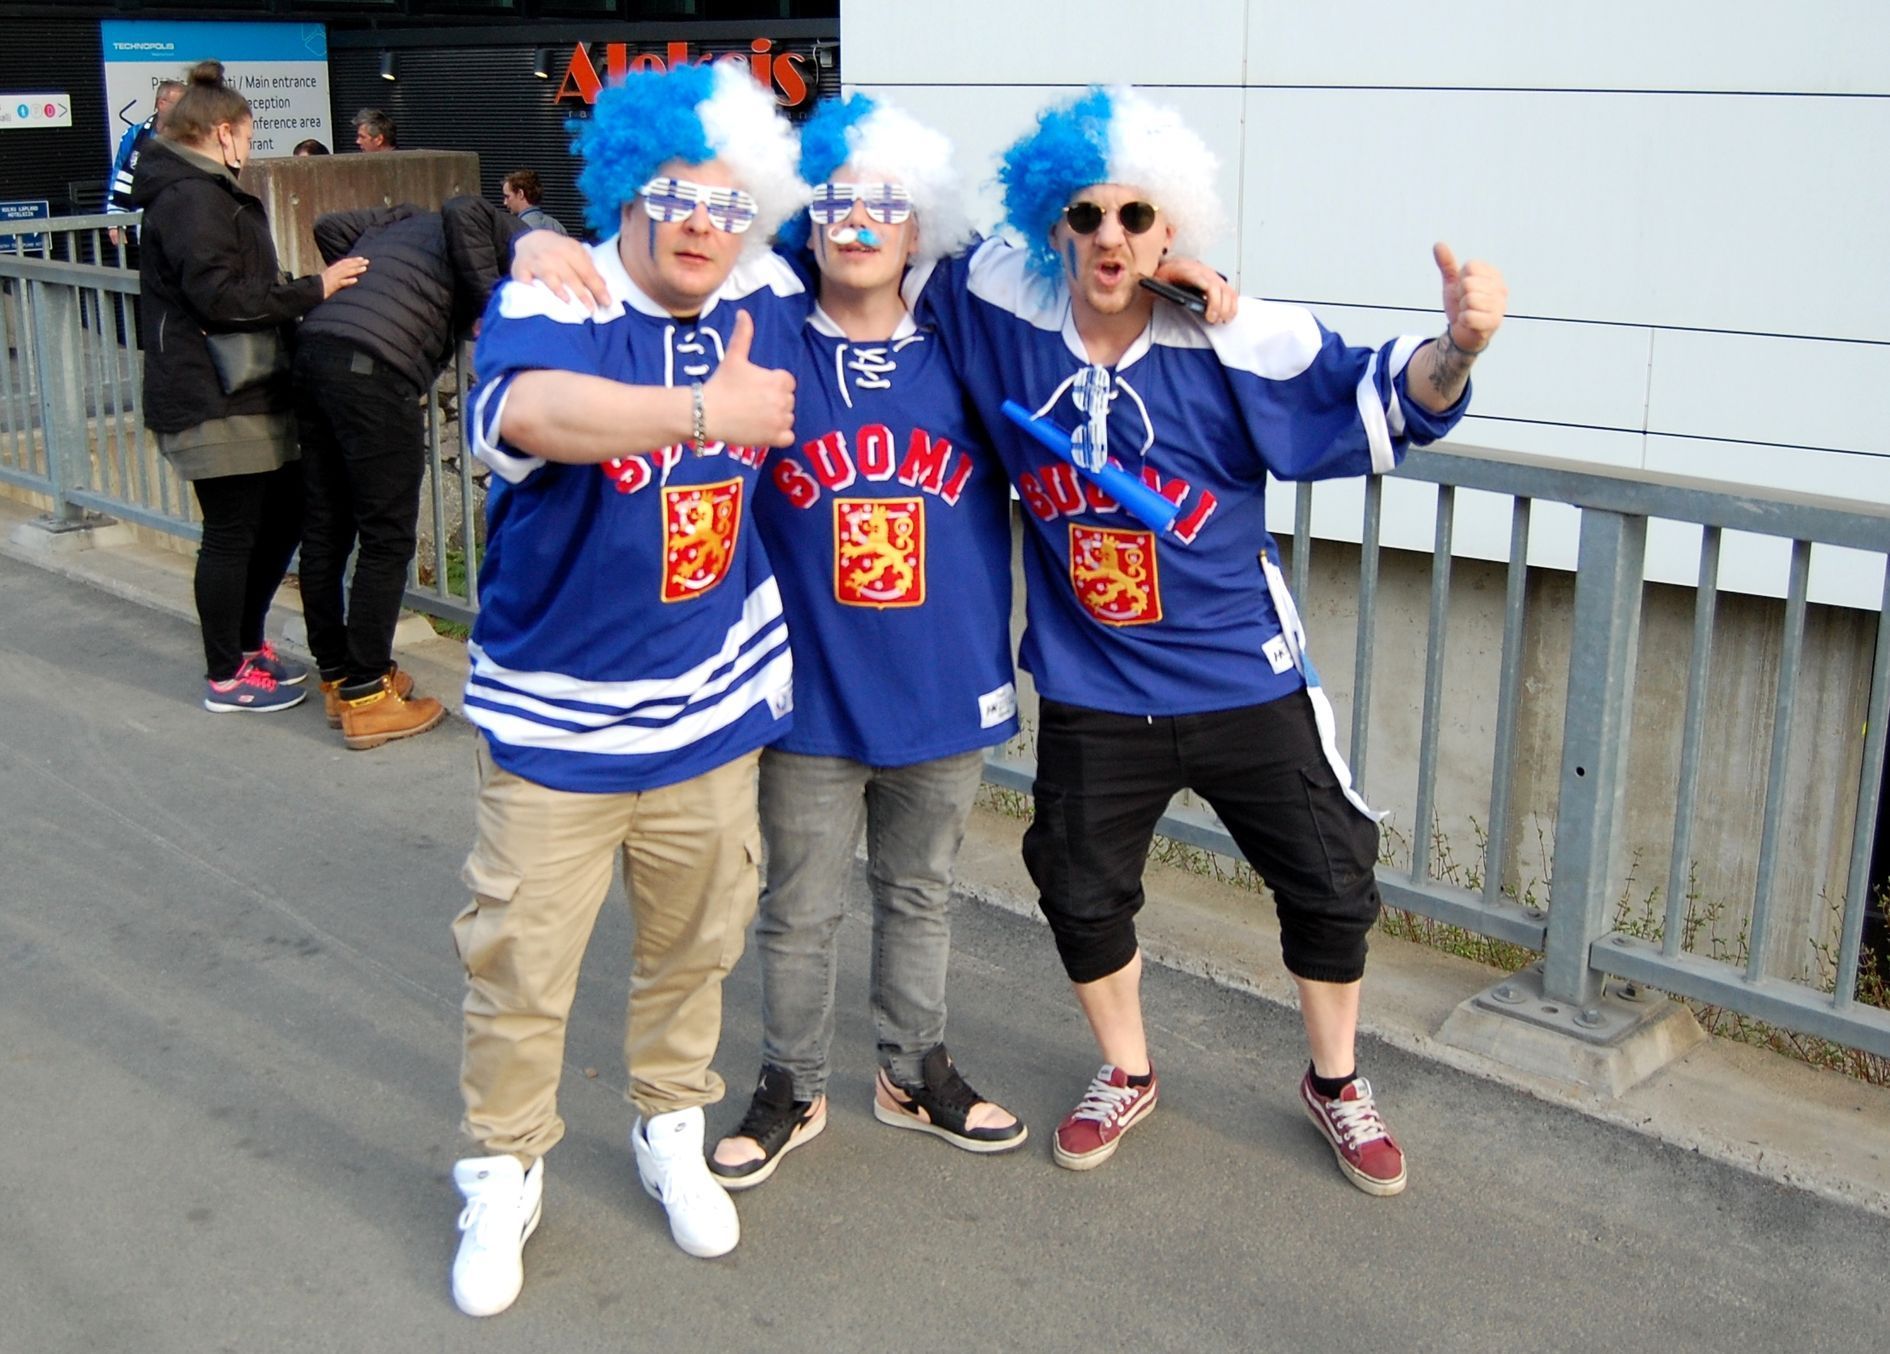 Skupinka finských fanoušků na hokejovém MS 2022 v Tampere